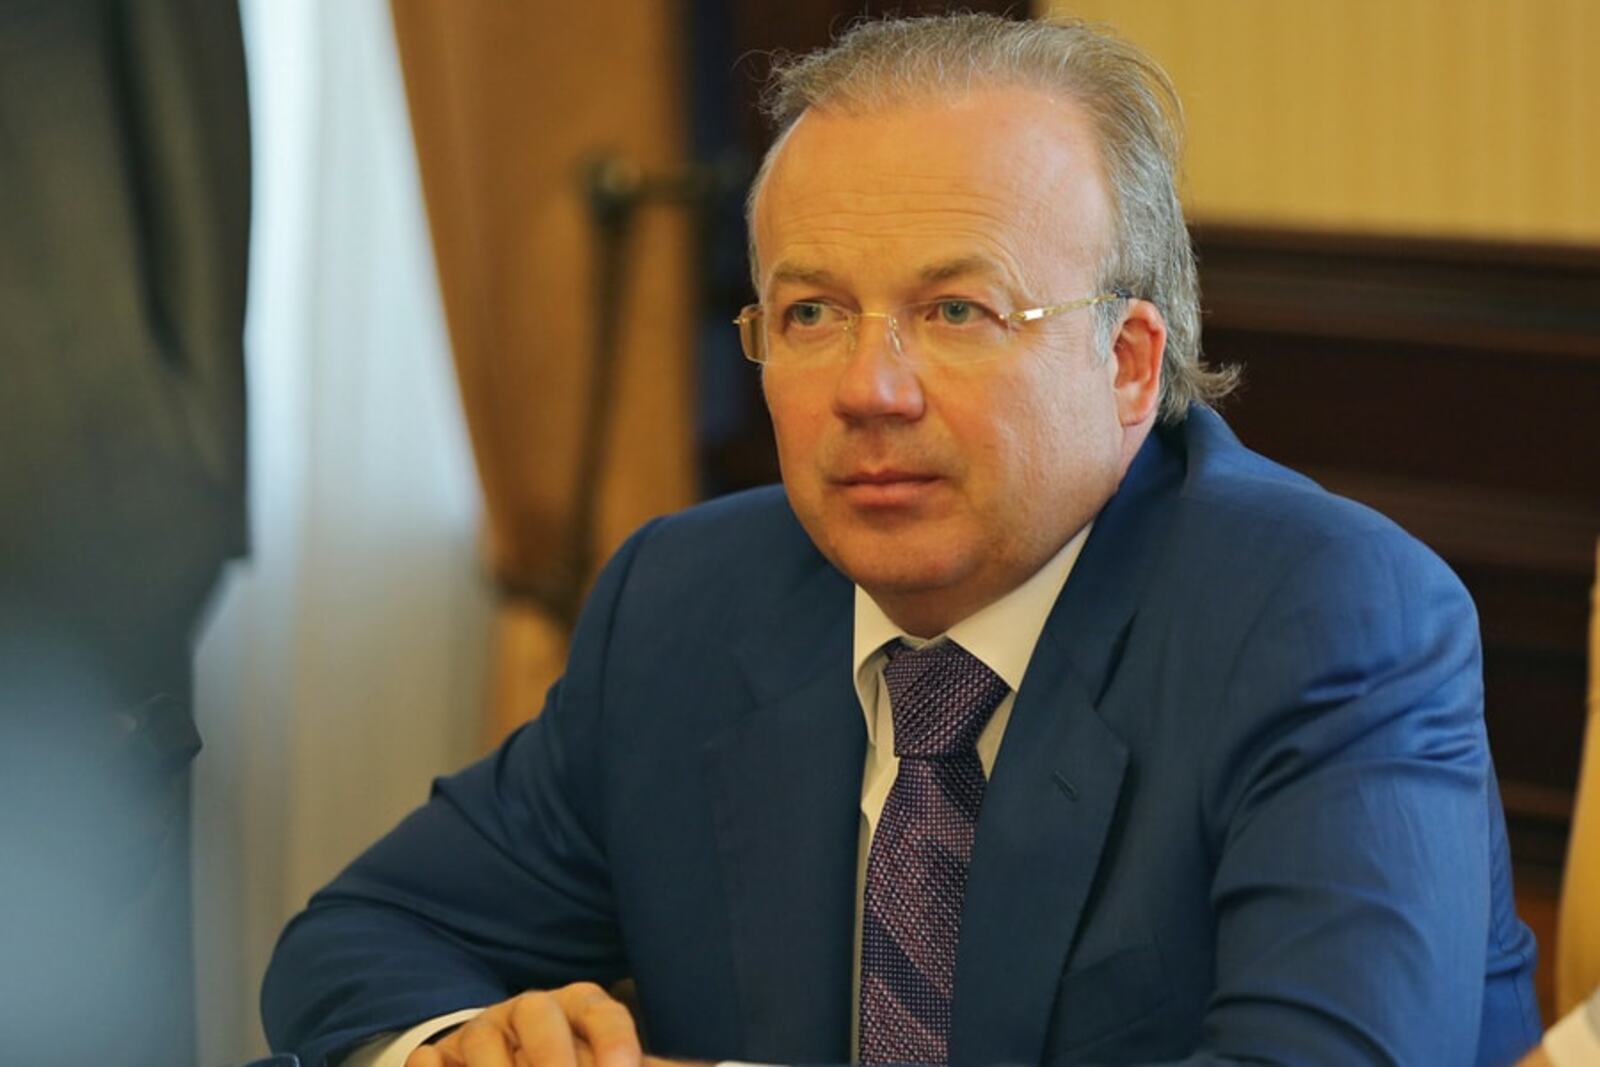 Премьер министр правительства башкортостан